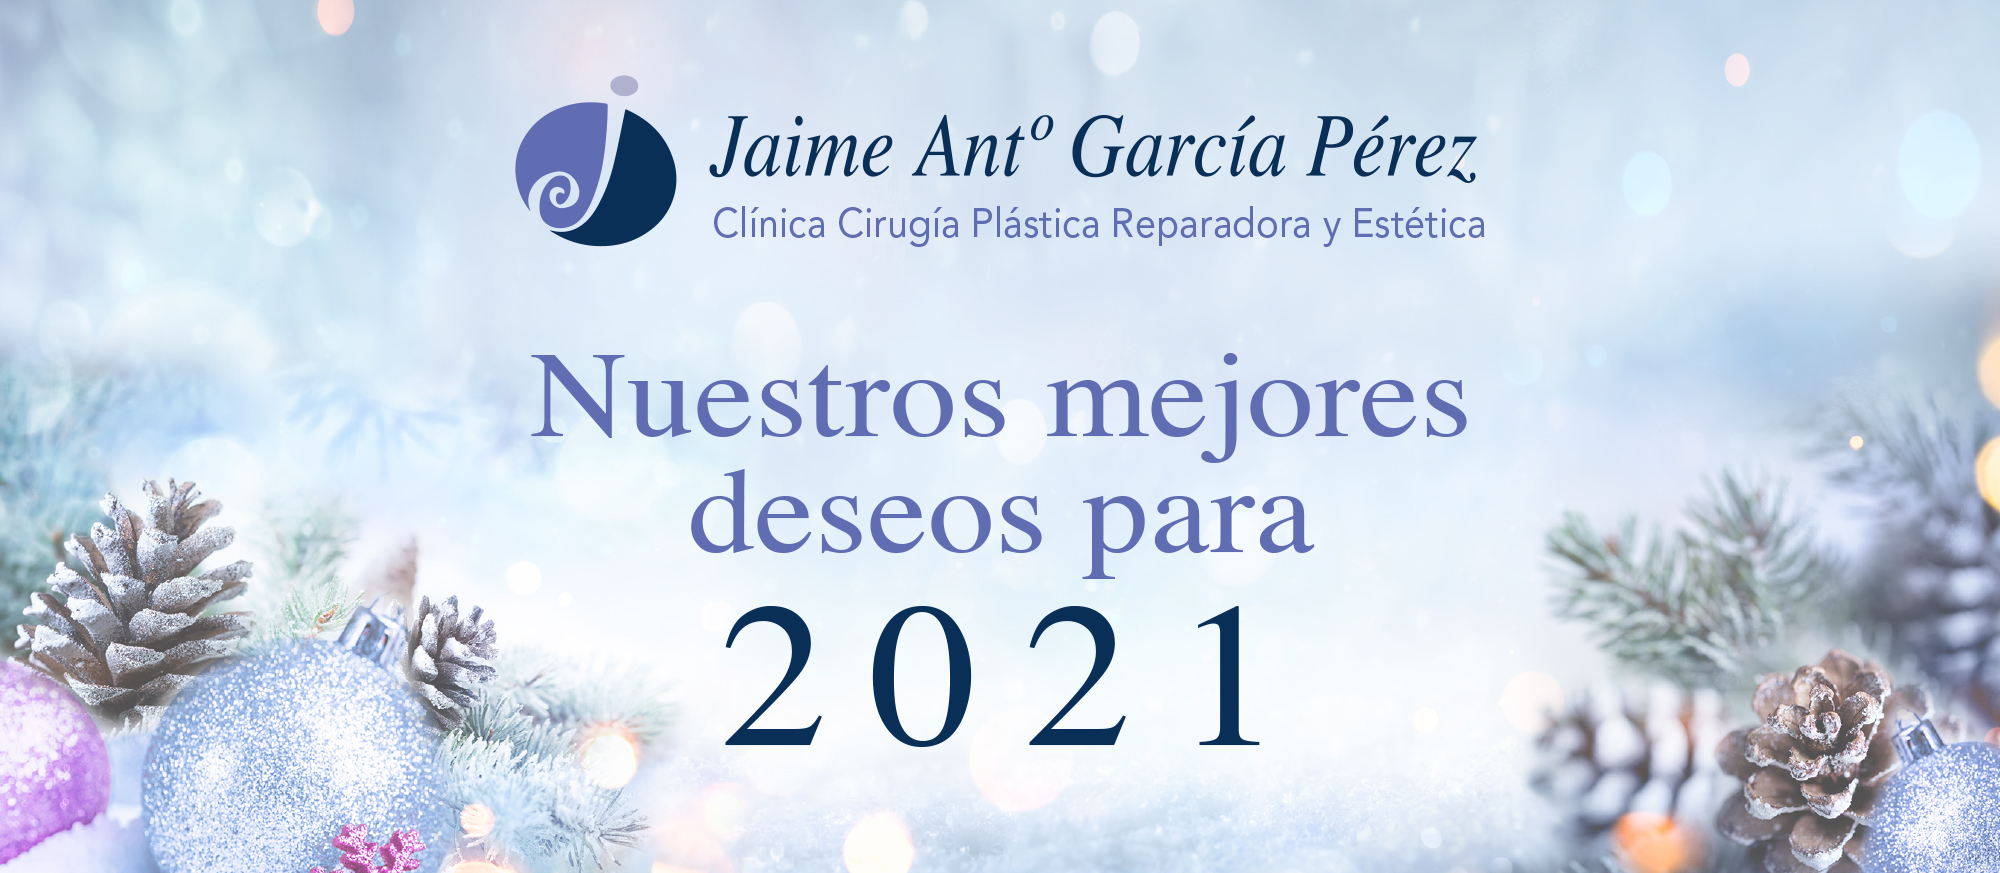 Doctor Jaime García: Os deseo toda la felicidad y salud para poder disfrutar estos días con vuestra familia y seres queridos. 